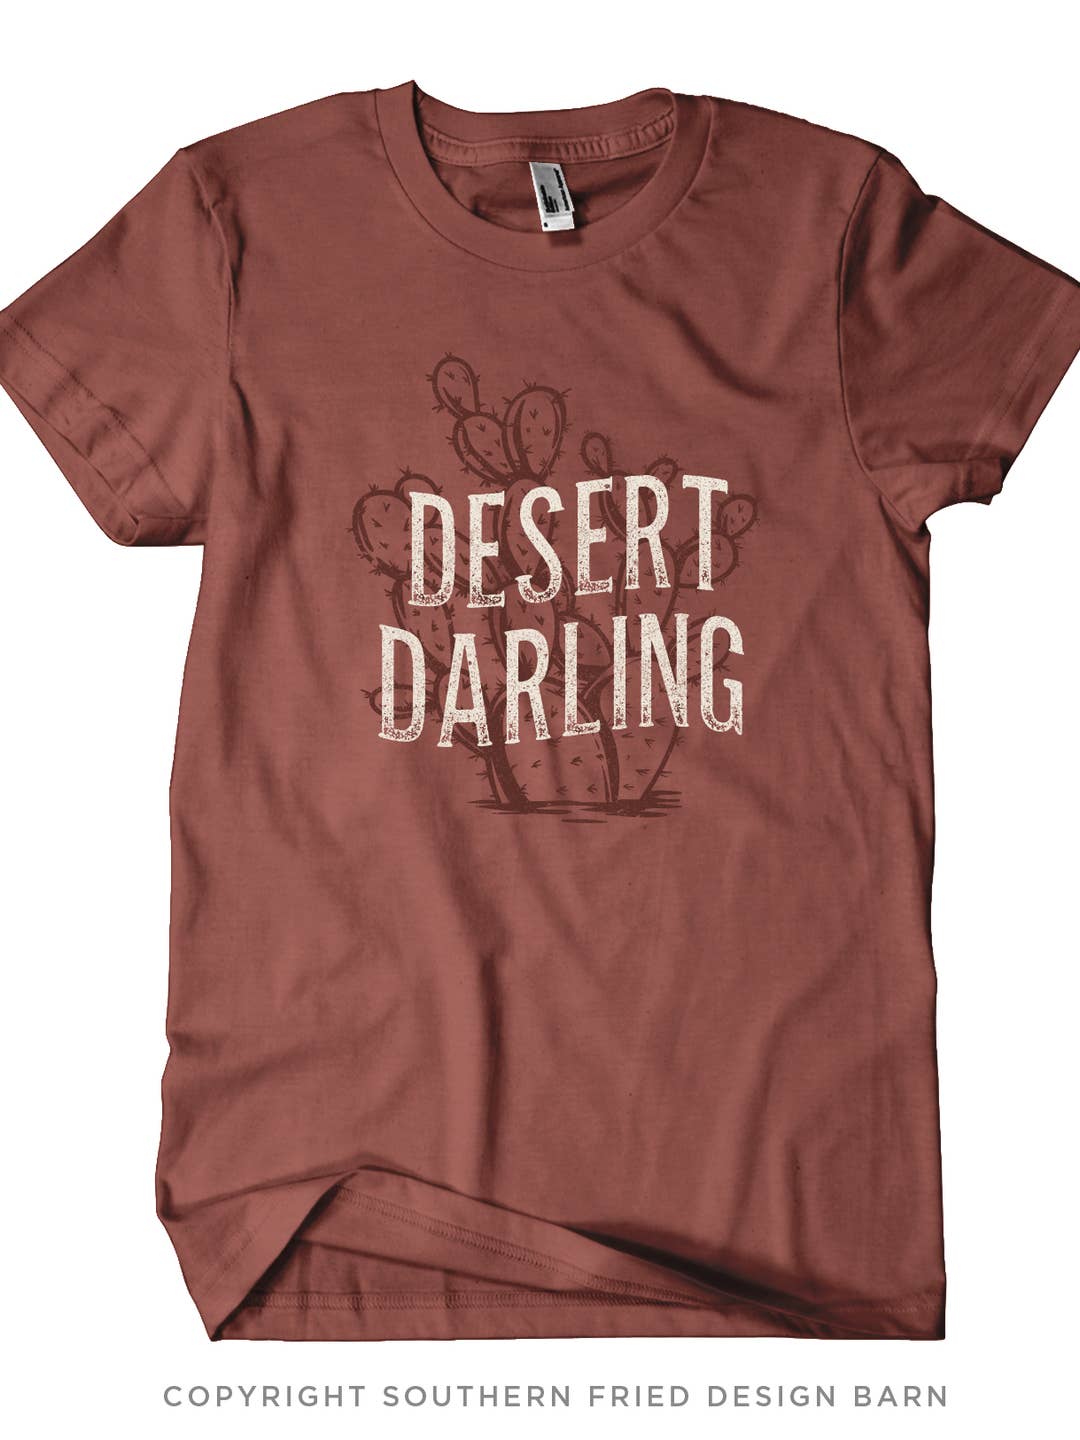 DESERT DARLING SHIRT